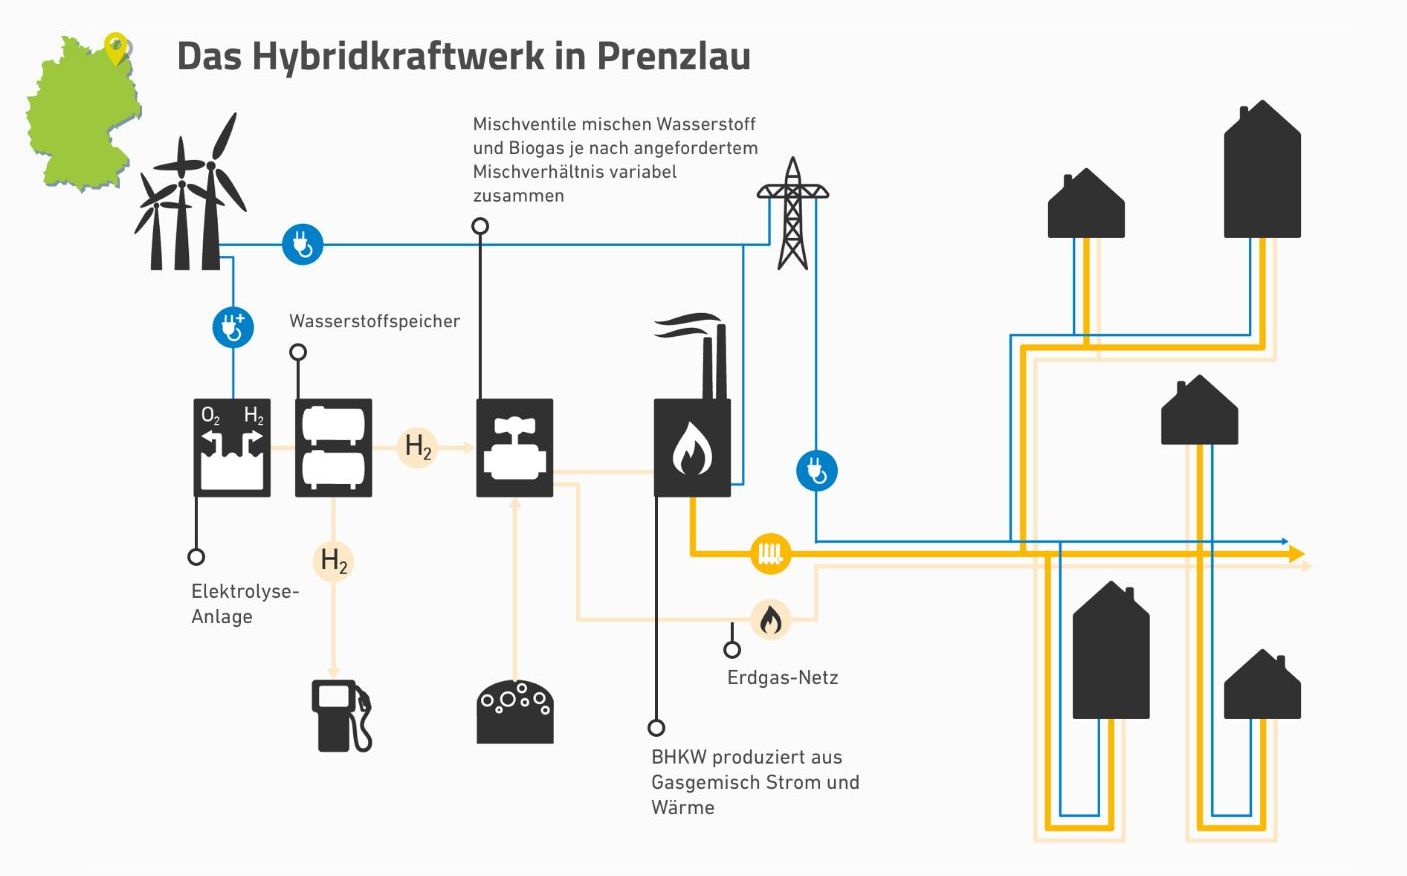 (Grafik: Agentur für Erneuerbare Energien/ Funktionsgrafik/ Funktionsweise des Hybridkraftwerks in Prenzlau)